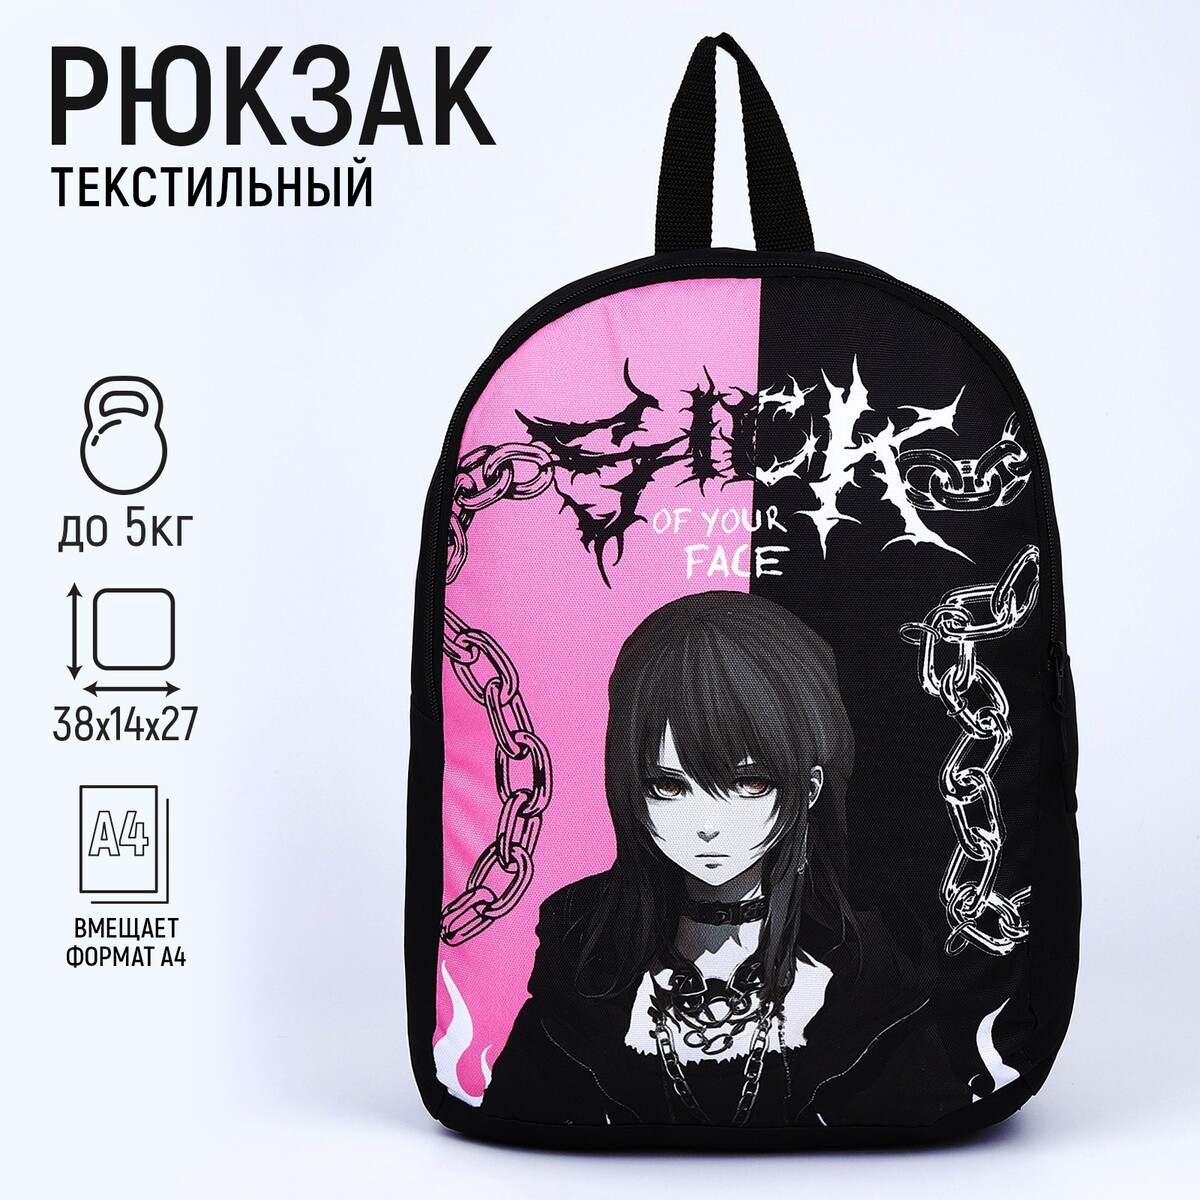 Рюкзак текстильный аниме, 38х14х27 см, цвет черный, розовый рюкзак текстильный nazamok 38х14х27 см